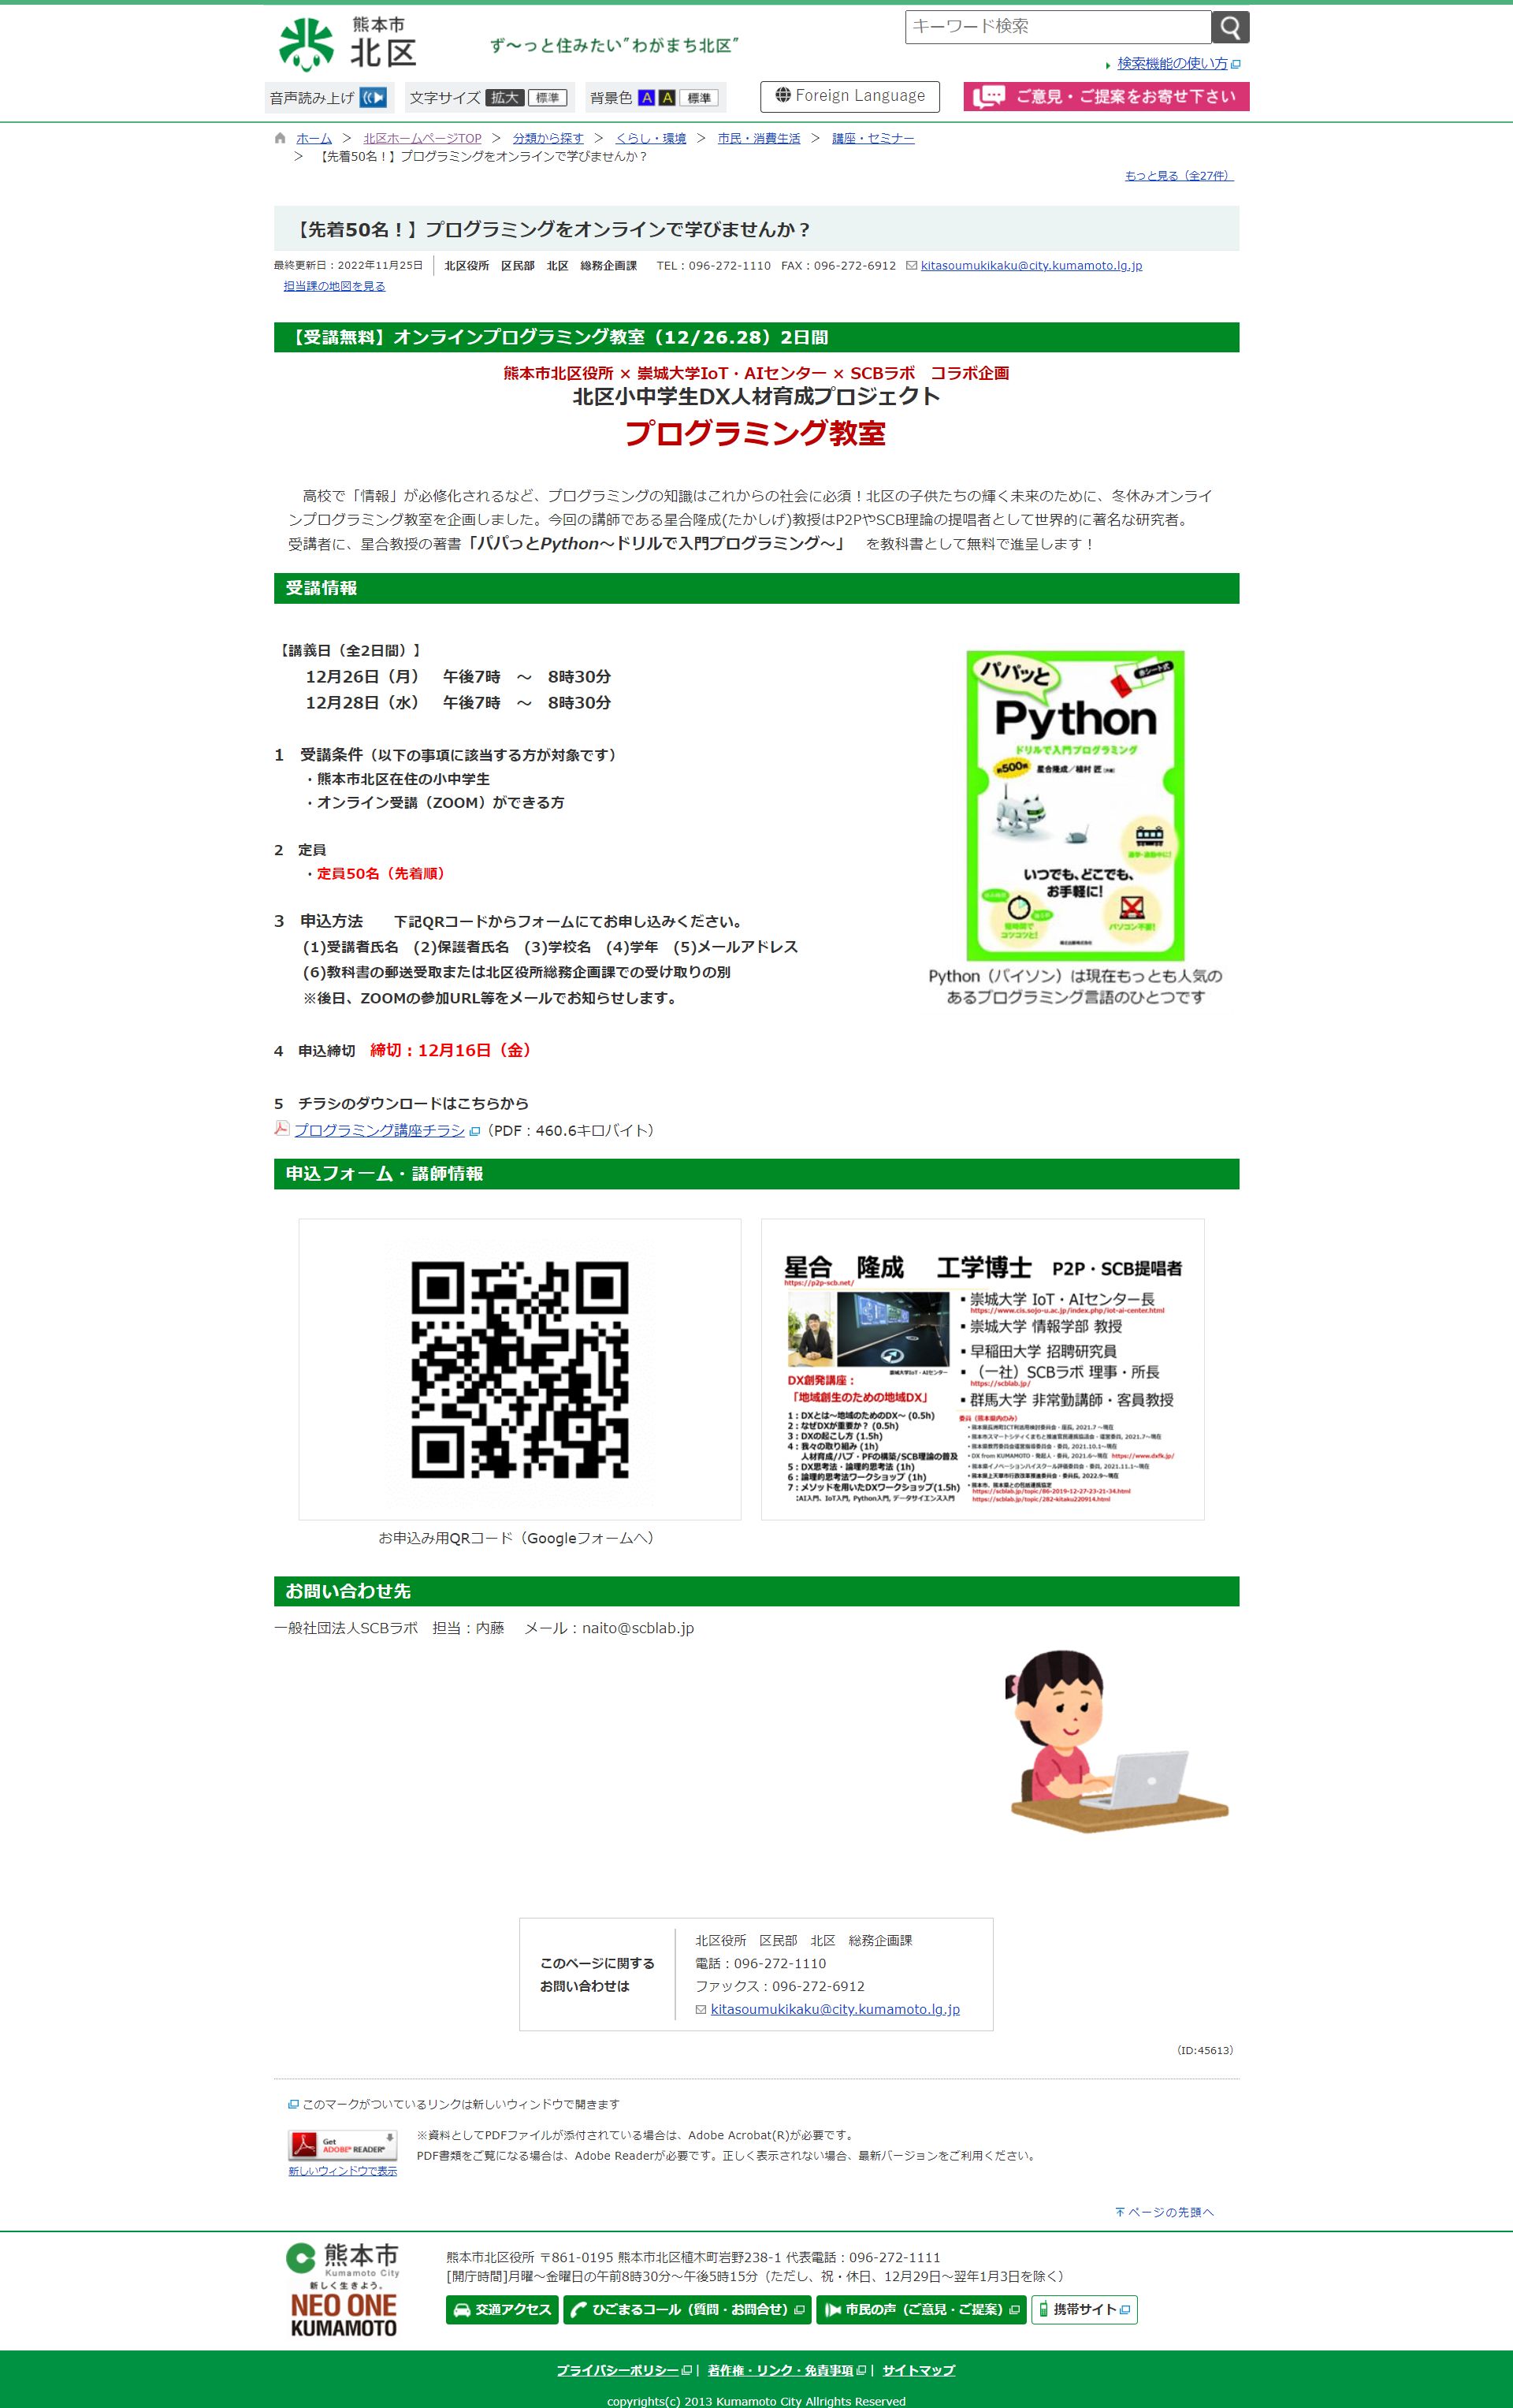 先着50名プログラミングをオンラインで学びませんか 北区ホームページTOP 熊本市ホームページ www.city.kumamoto.jp 20221205